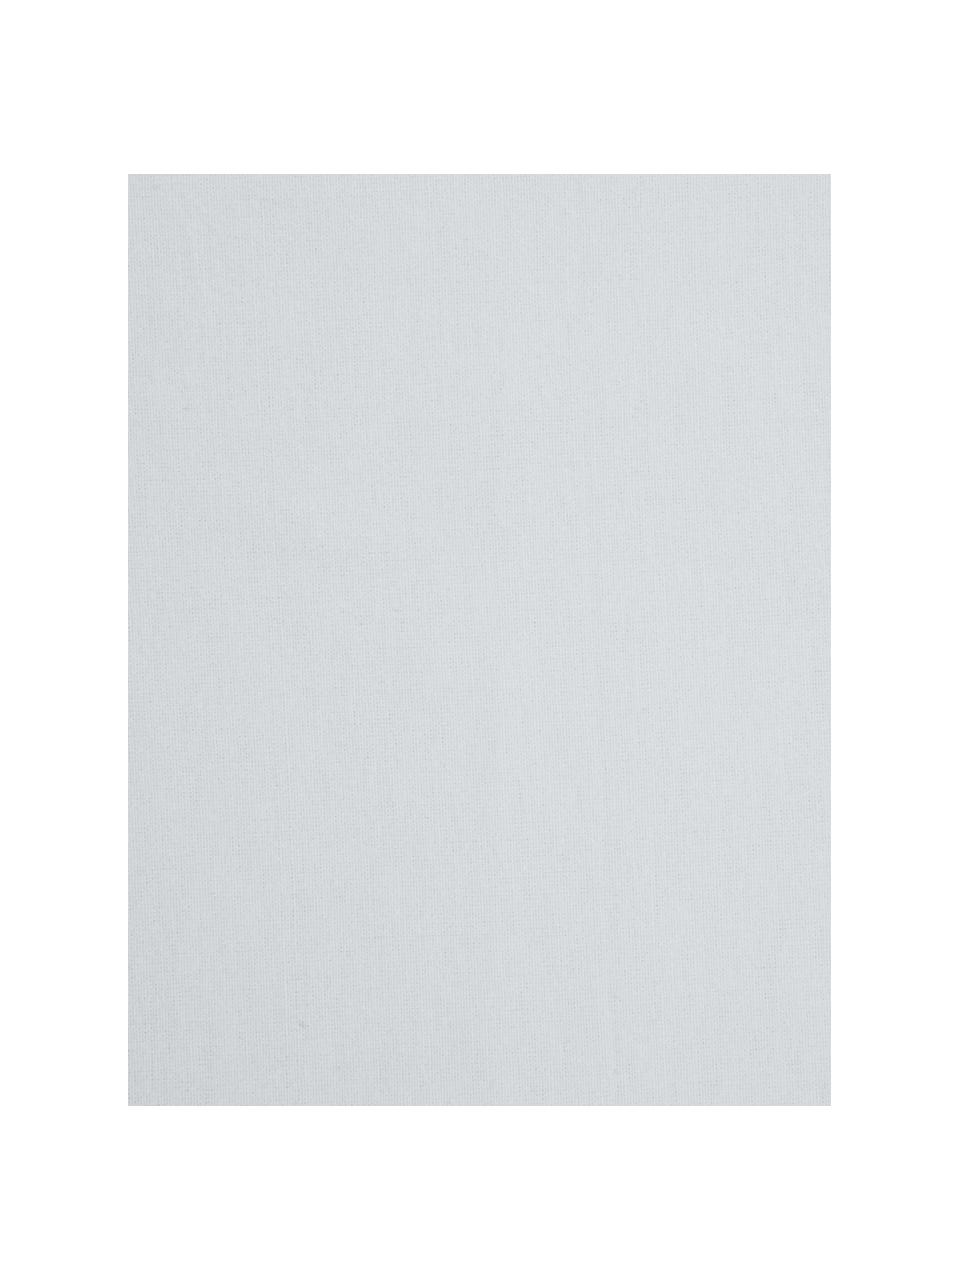 Drap-housse en flanelle gris clair Biba, Gris clair, larg. 180 x long. 200 cm